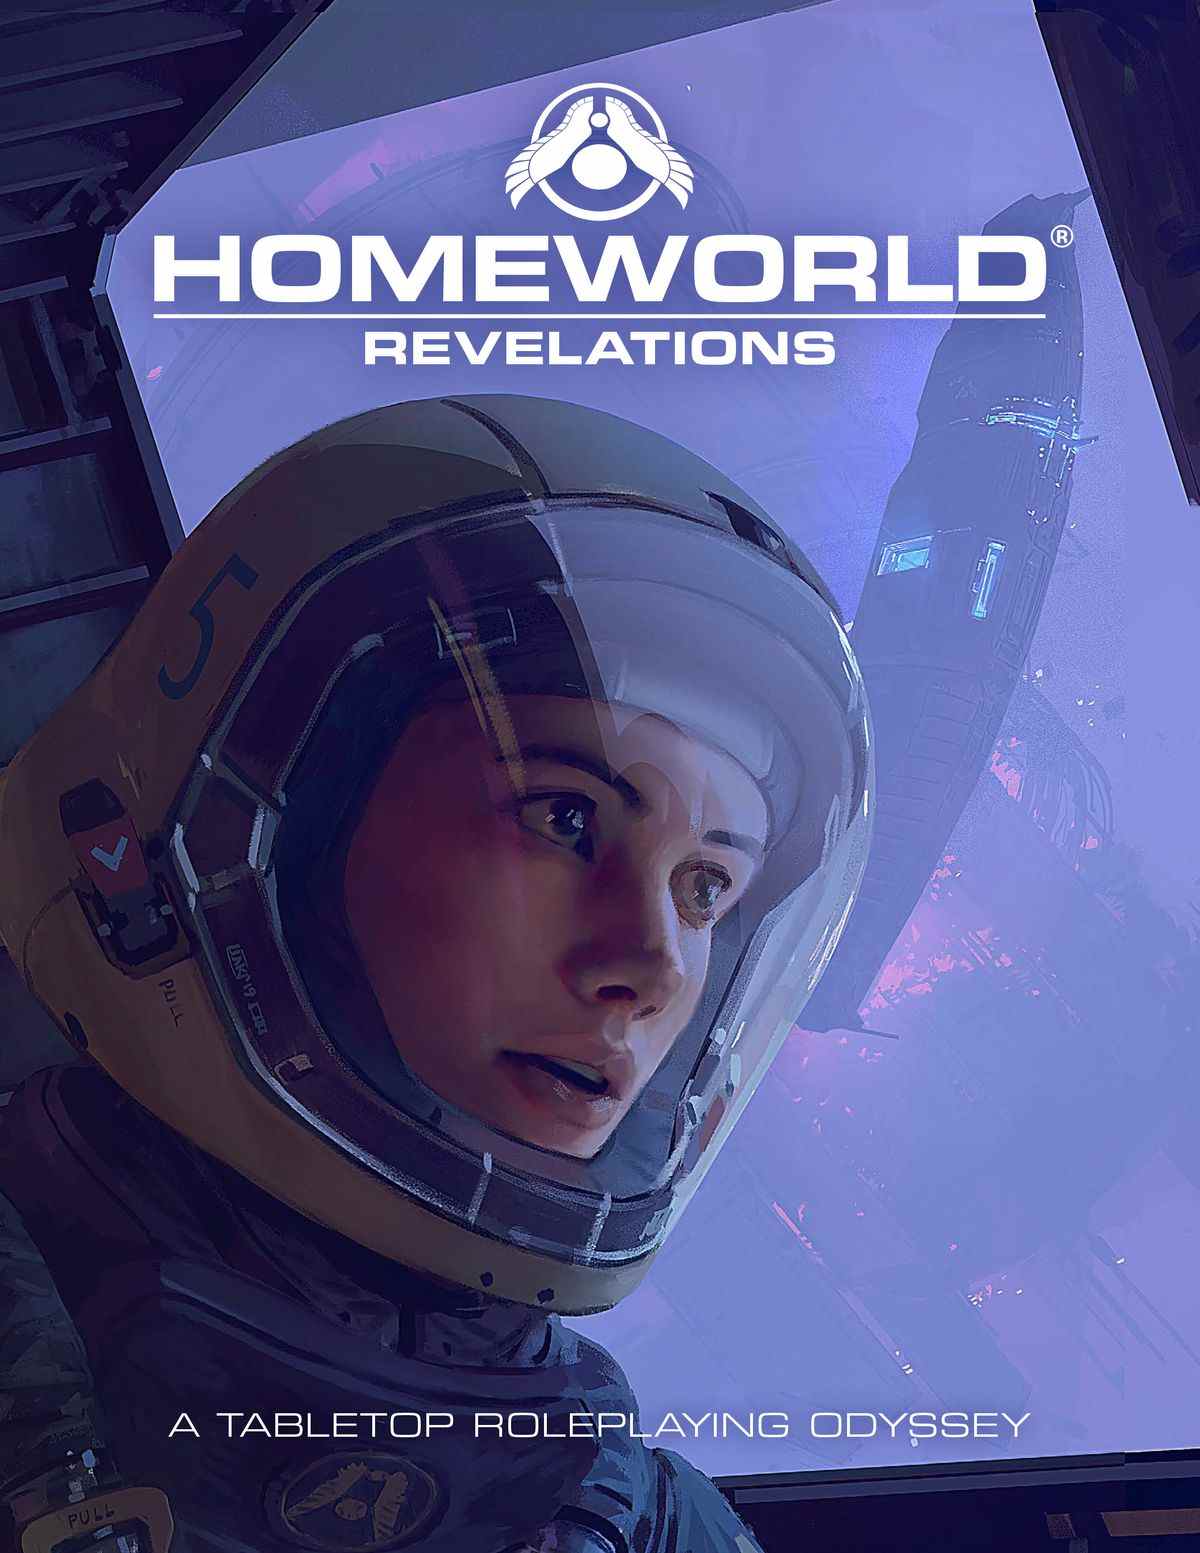 Couverture et logo du livre de règles de base Homeworld: Revelations.